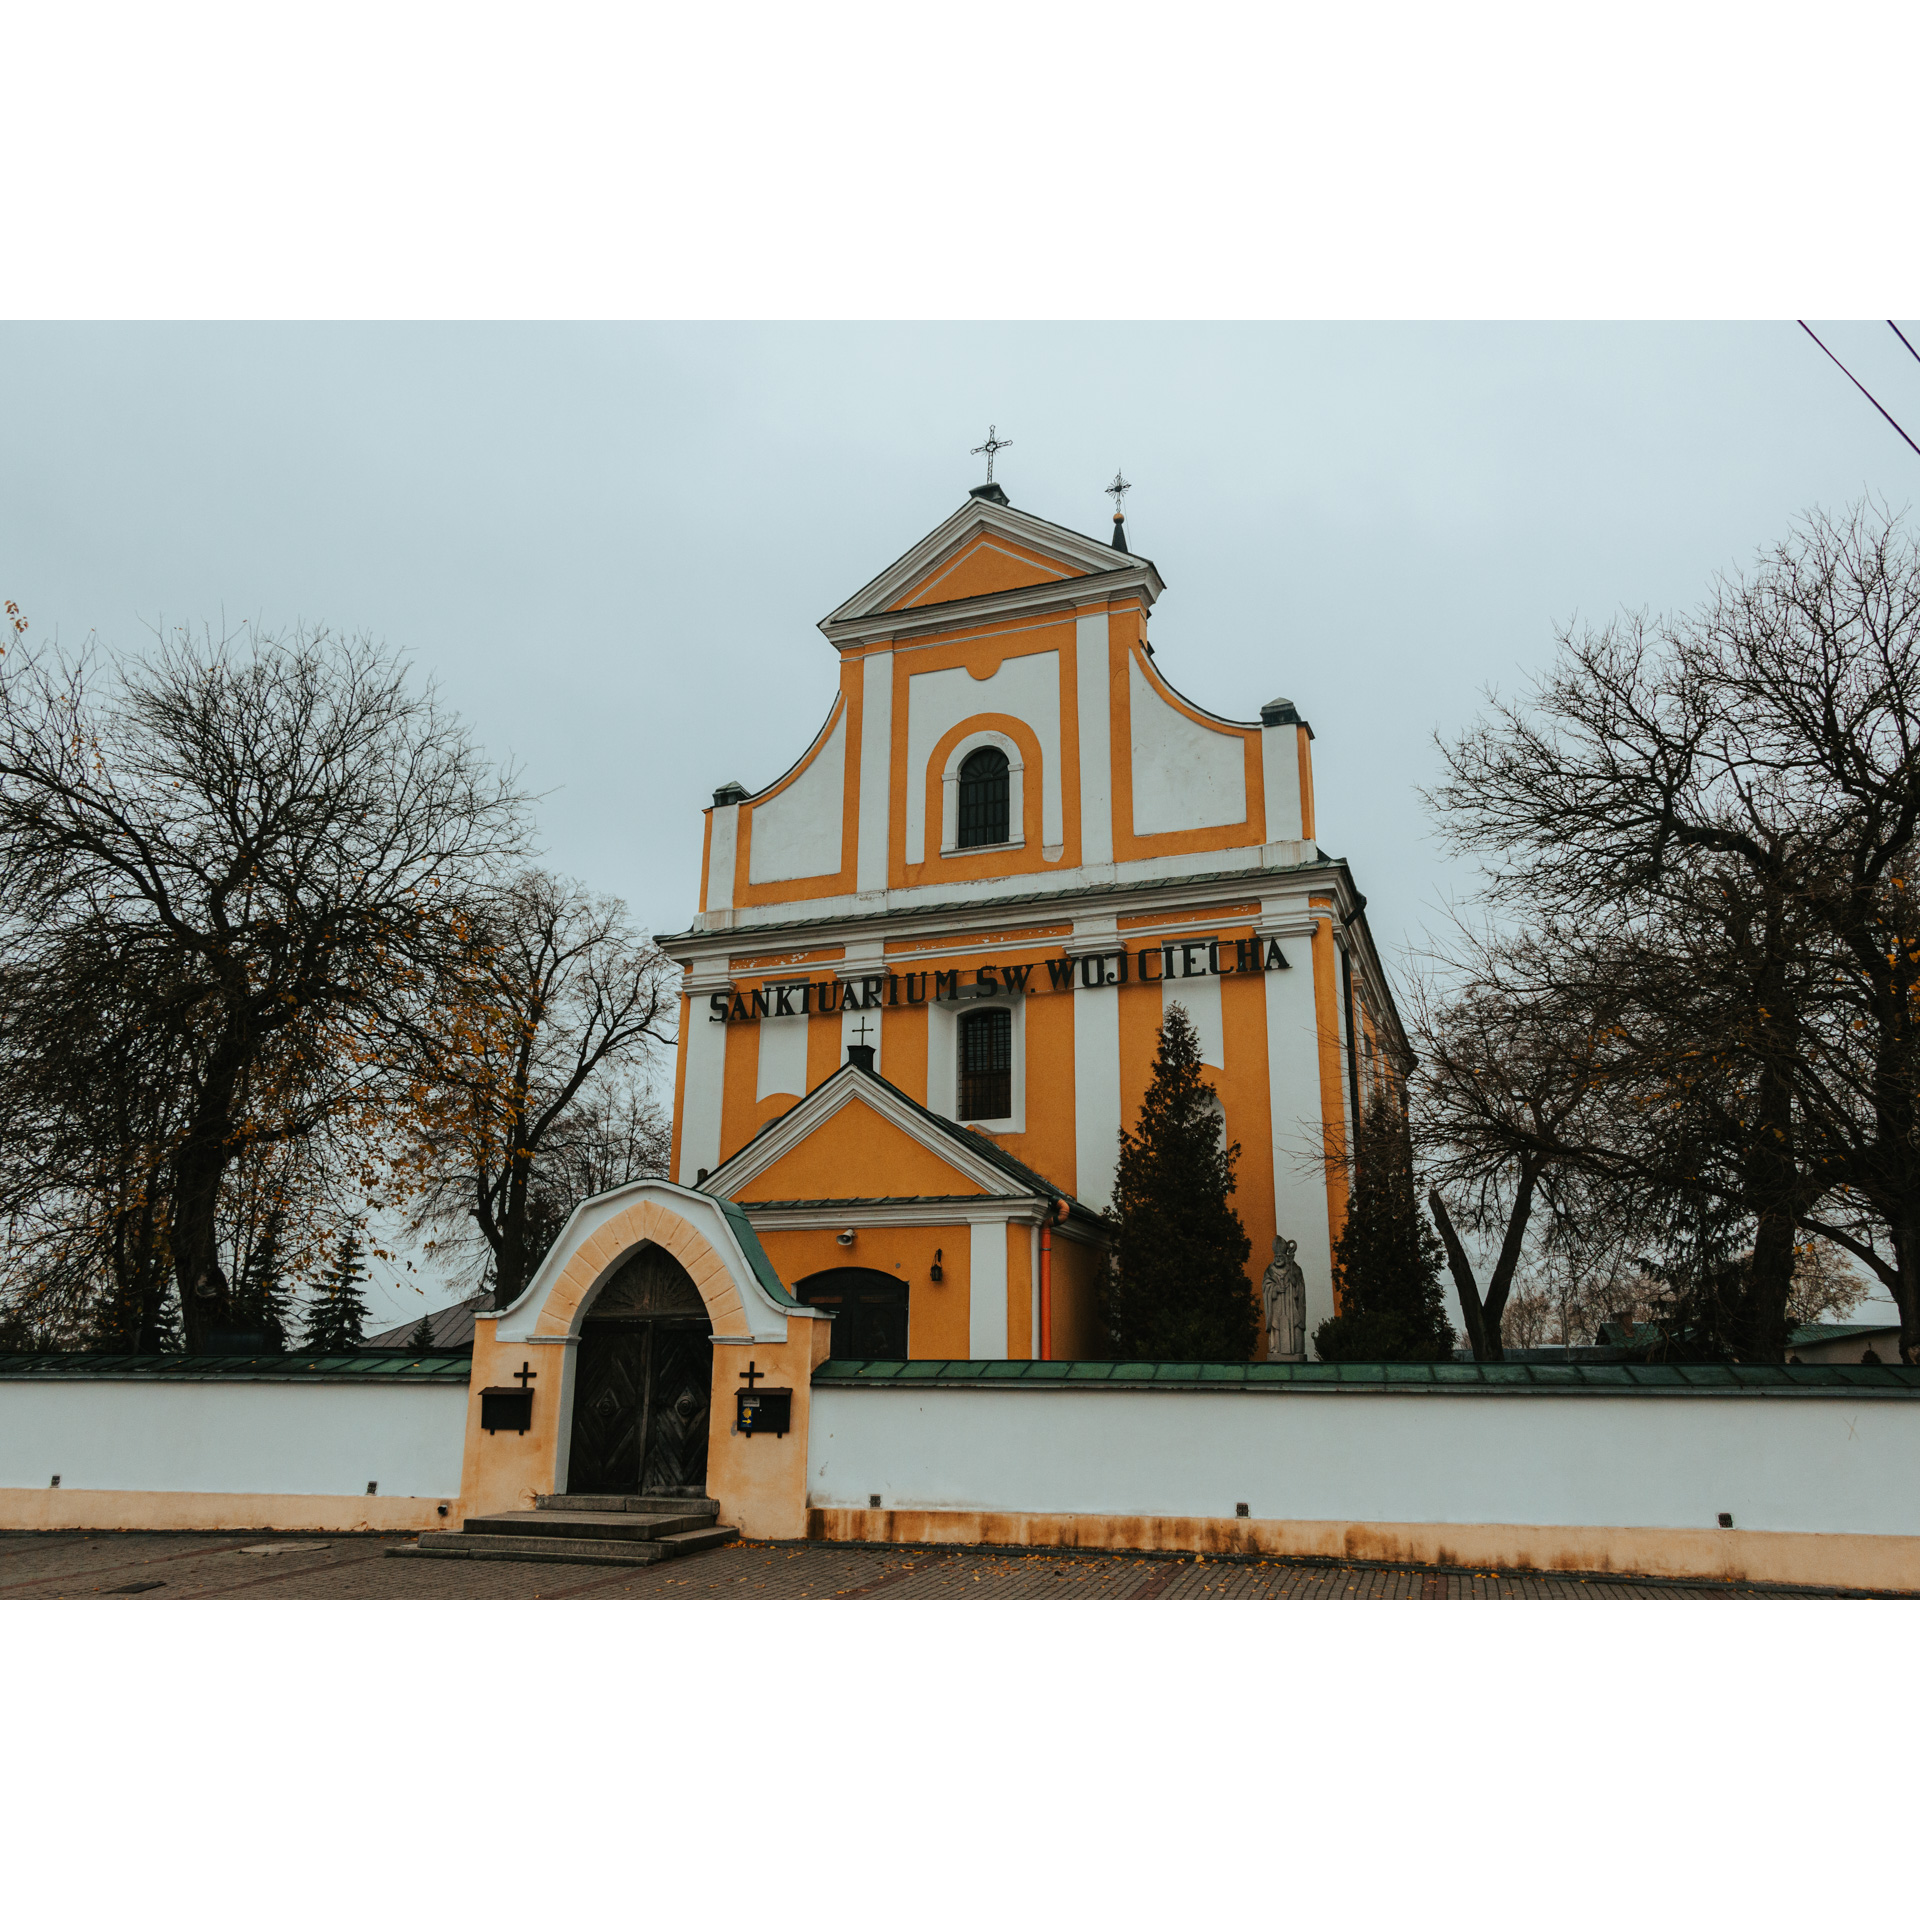 Biało pomarańczowy kościół z ozdobną fasadą i czarnym napisem ogrodzony jasnym murem z pomarańczową murowaną bramą